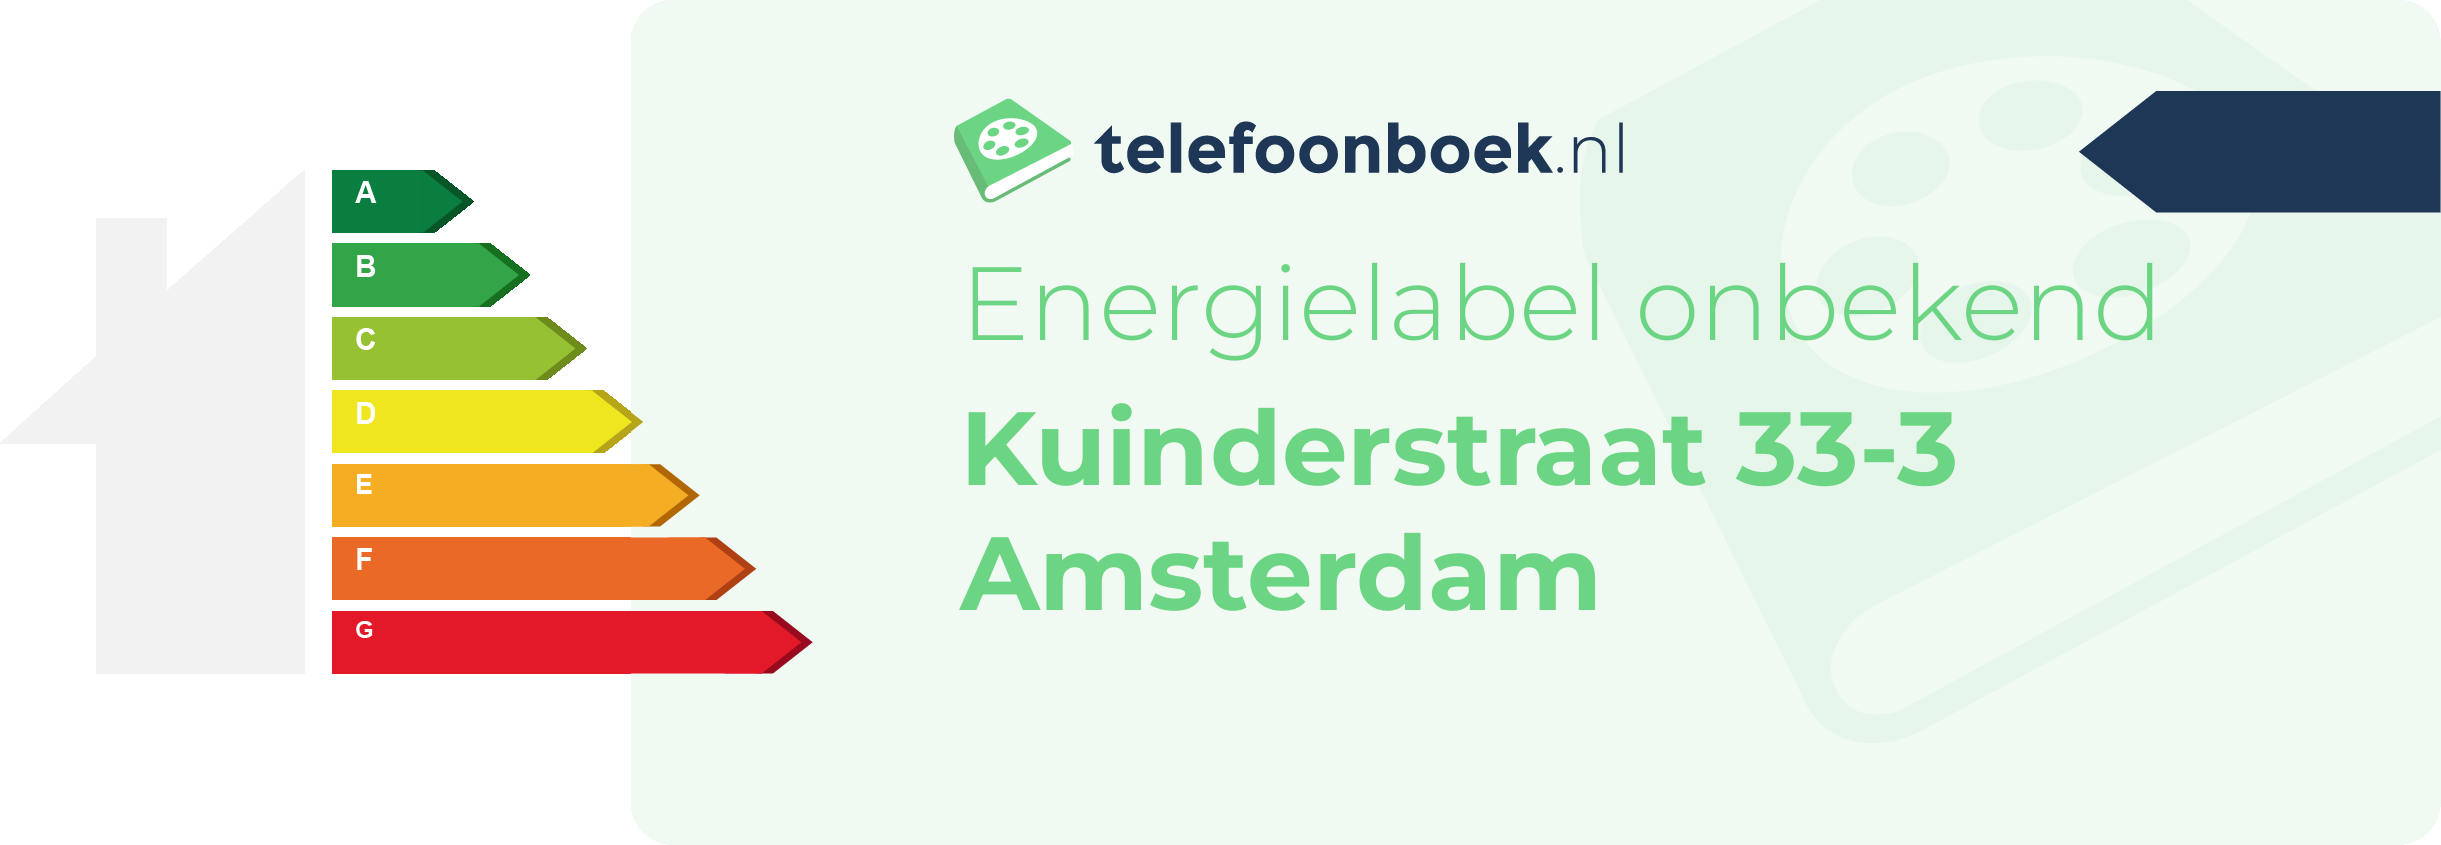 Energielabel Kuinderstraat 33-3 Amsterdam